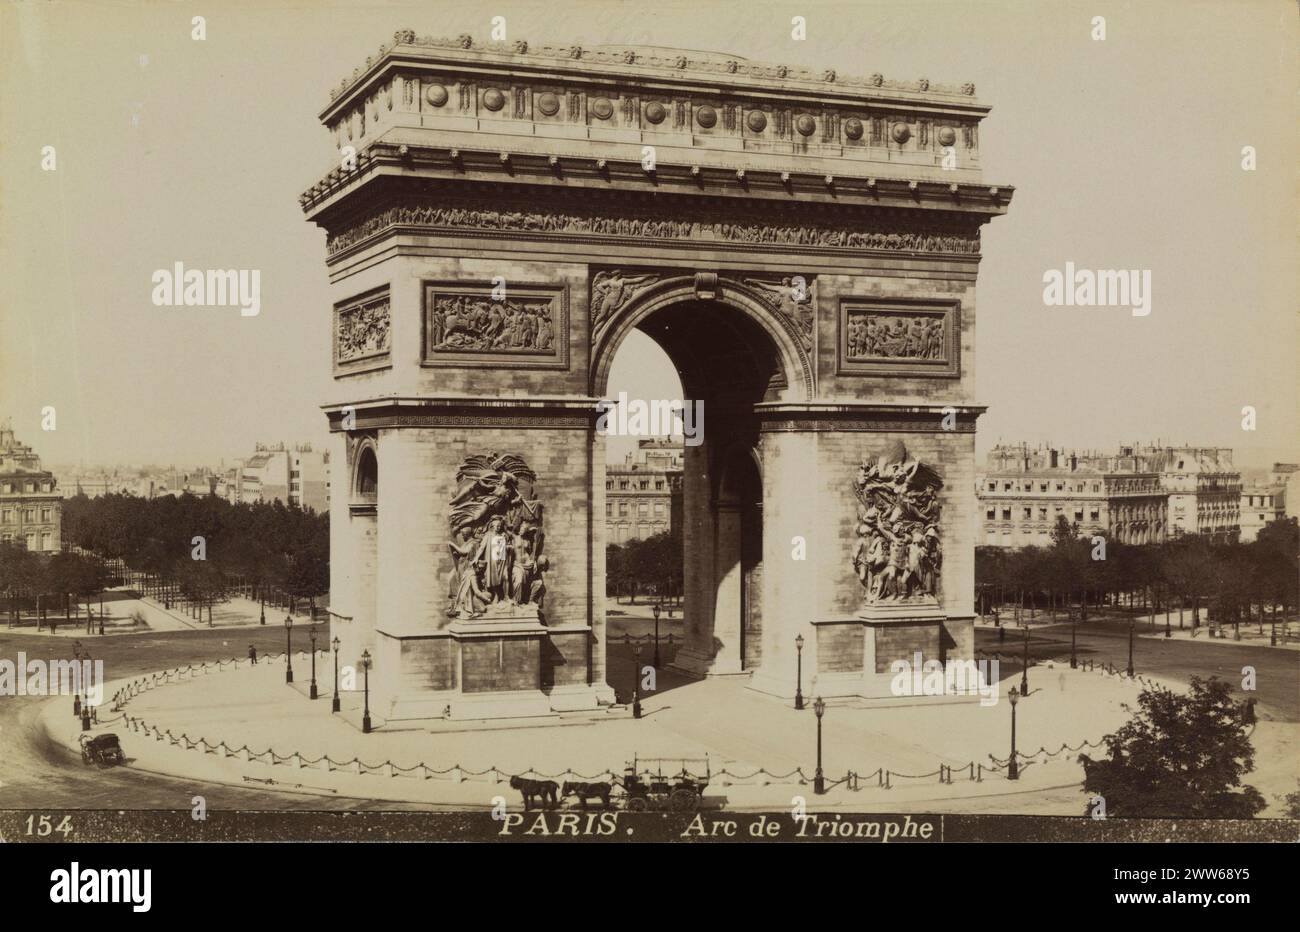 Photo vintage en noir et blanc de l'Arc de Triomphe à Paris, France CA. 1885, impression albumen Banque D'Images